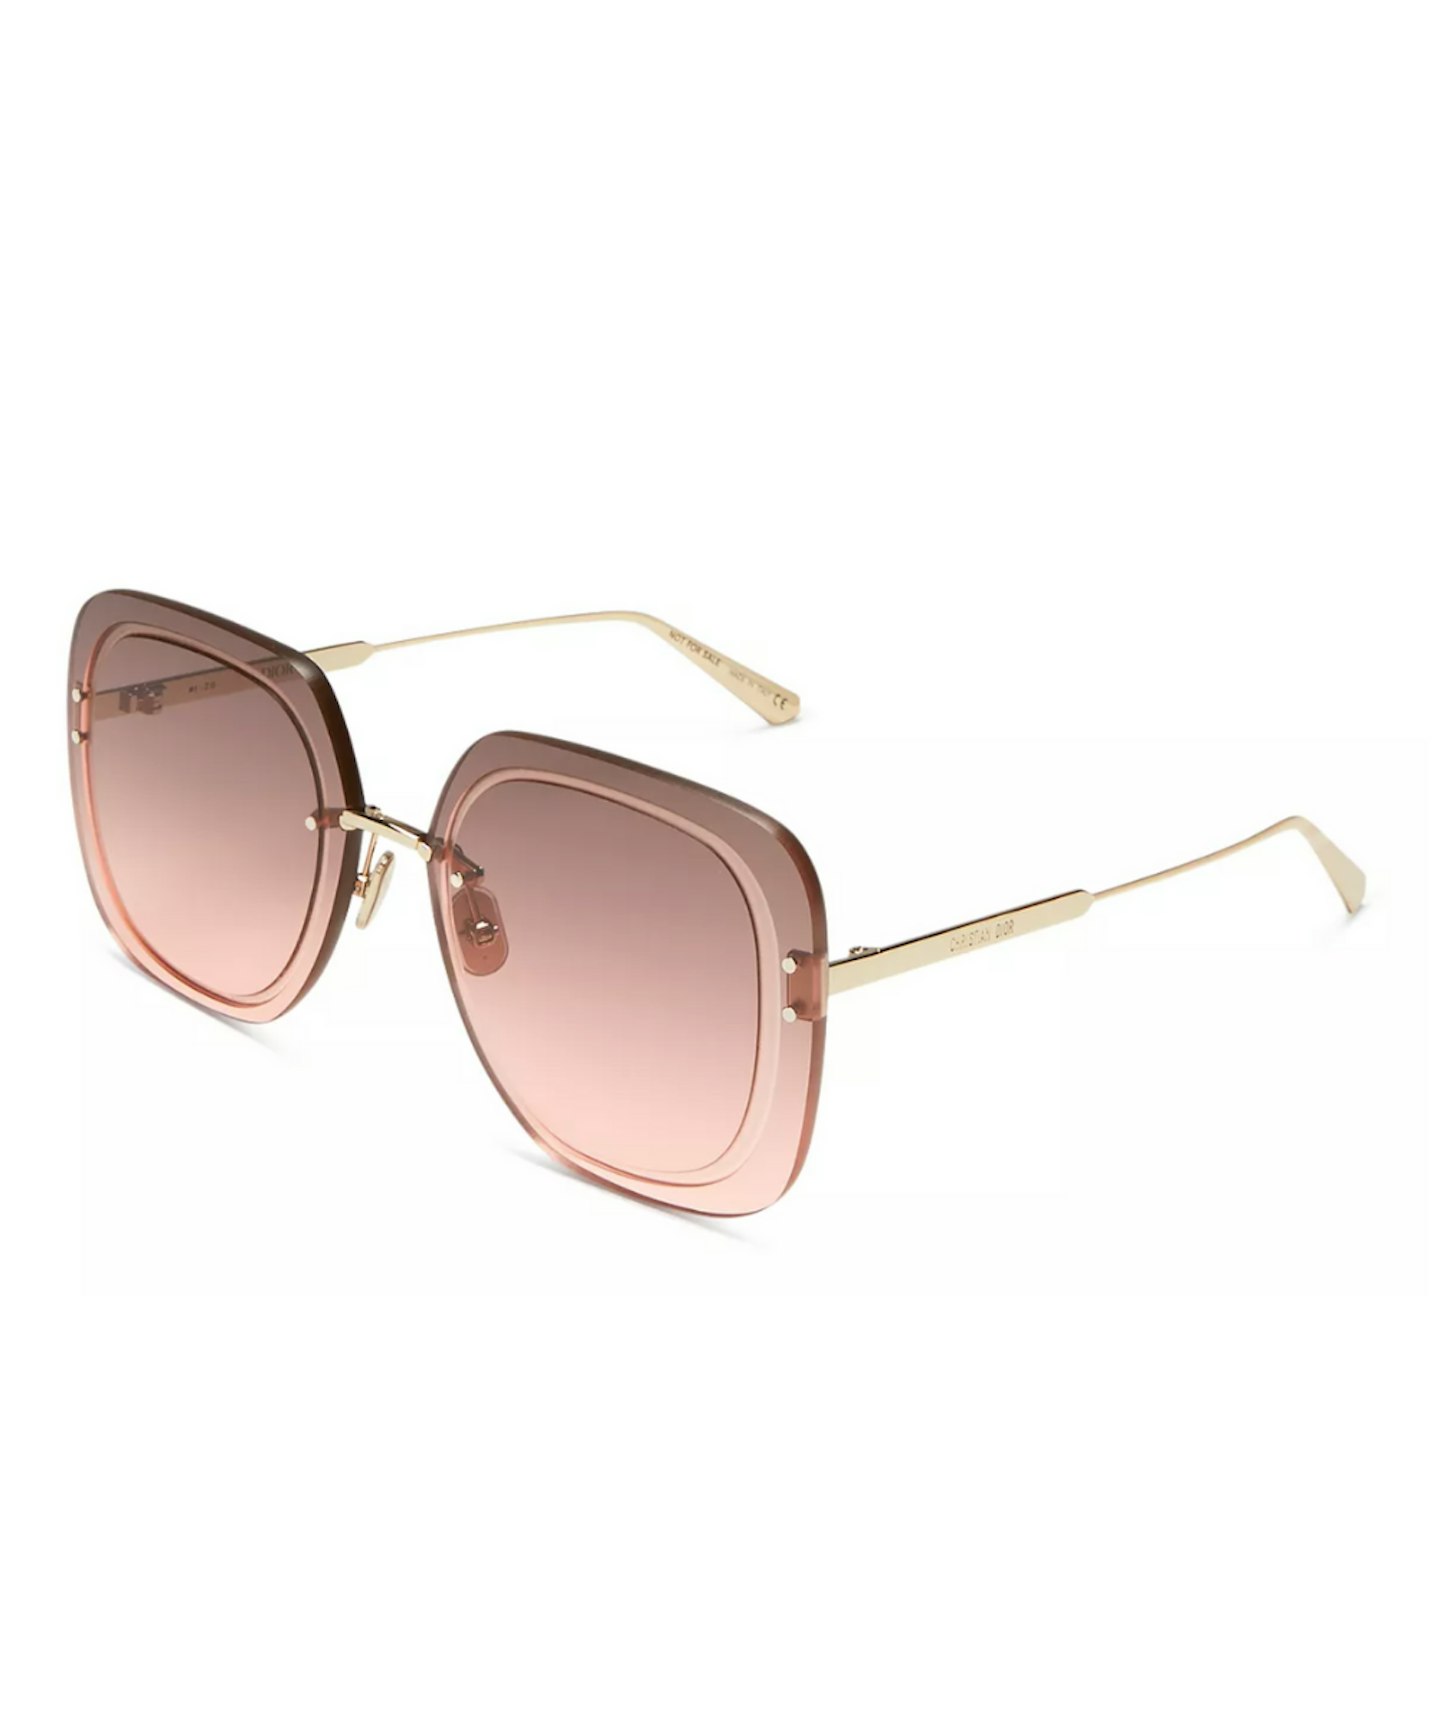 Dior Women's Square Sunglasses, 65mm